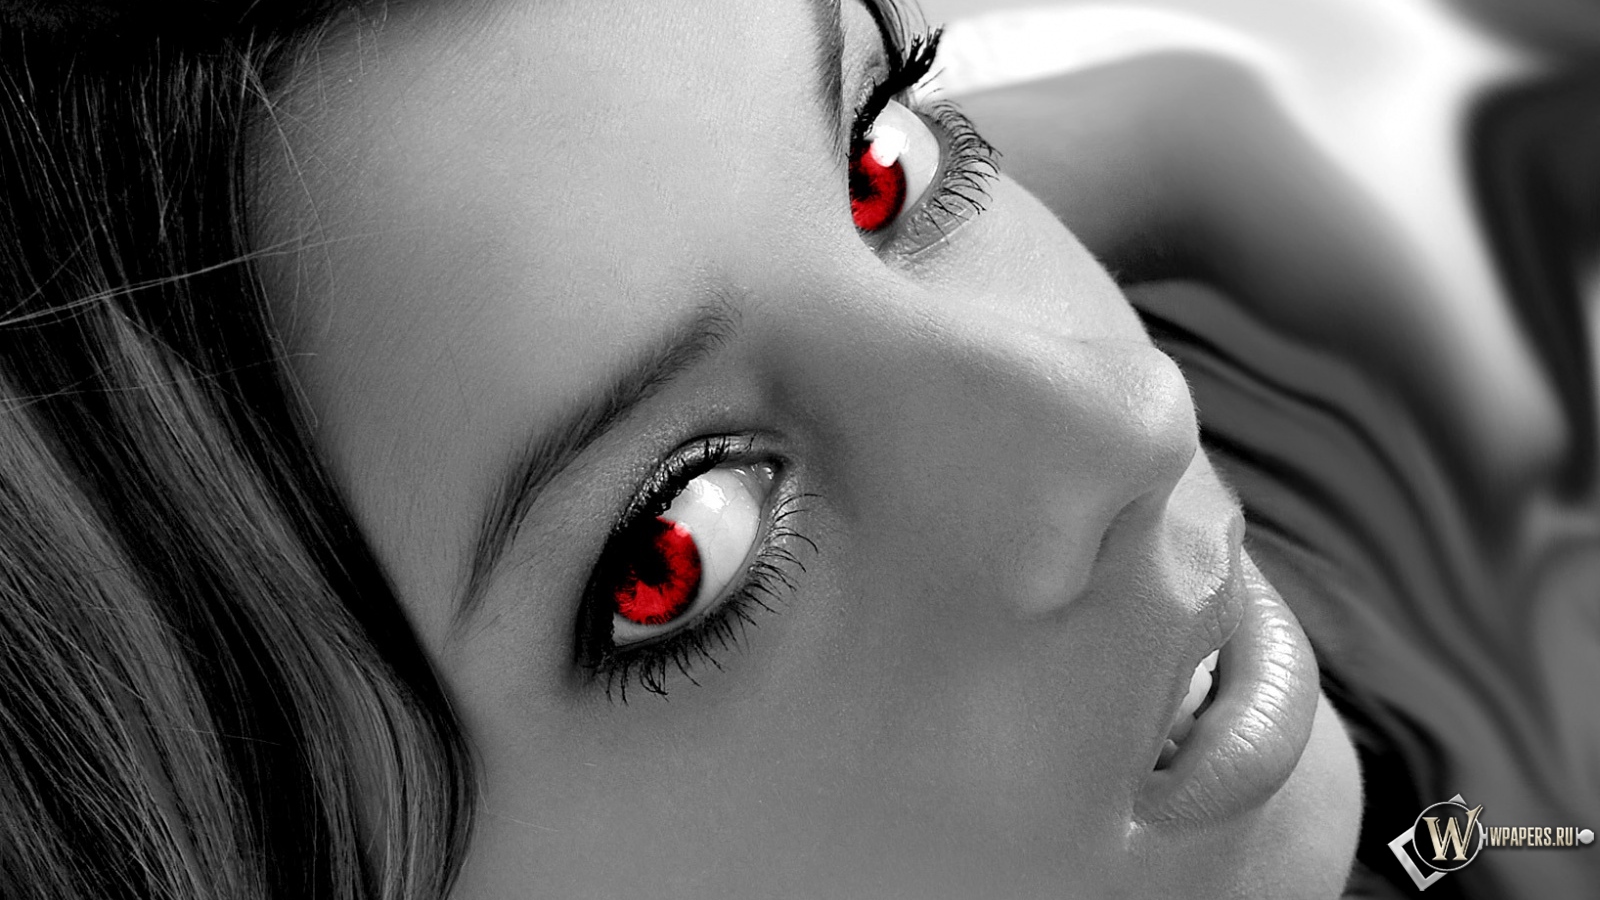 Девушка с красными зрачками 1600x900